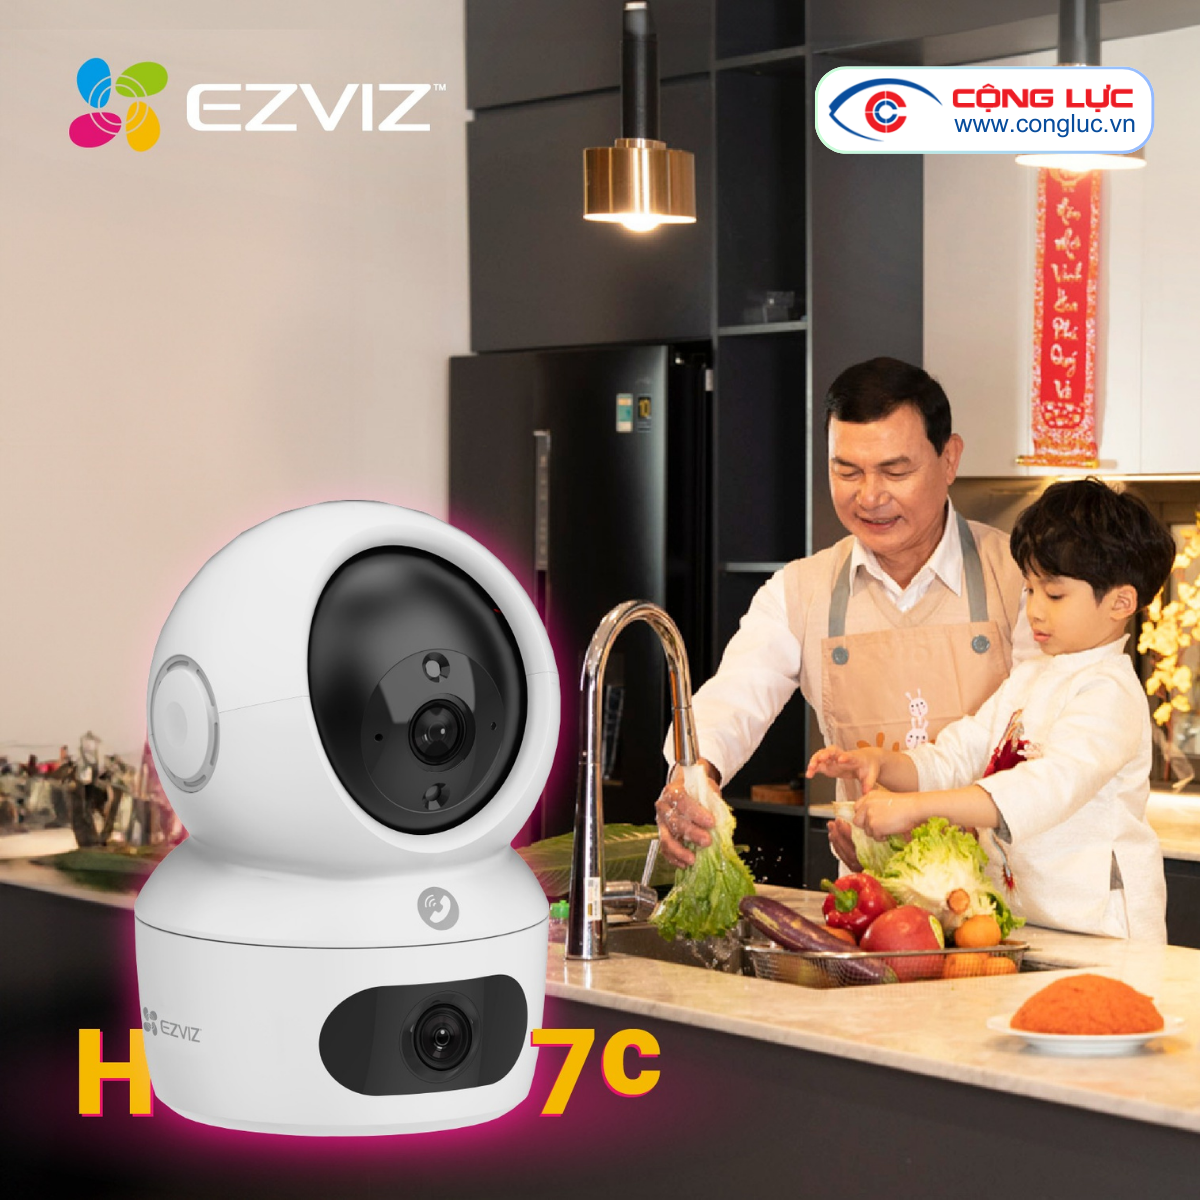 bán và lắp đặt camera wifi ezviz h7c 8mp chính hãng giá rẻ nhất hải phòng